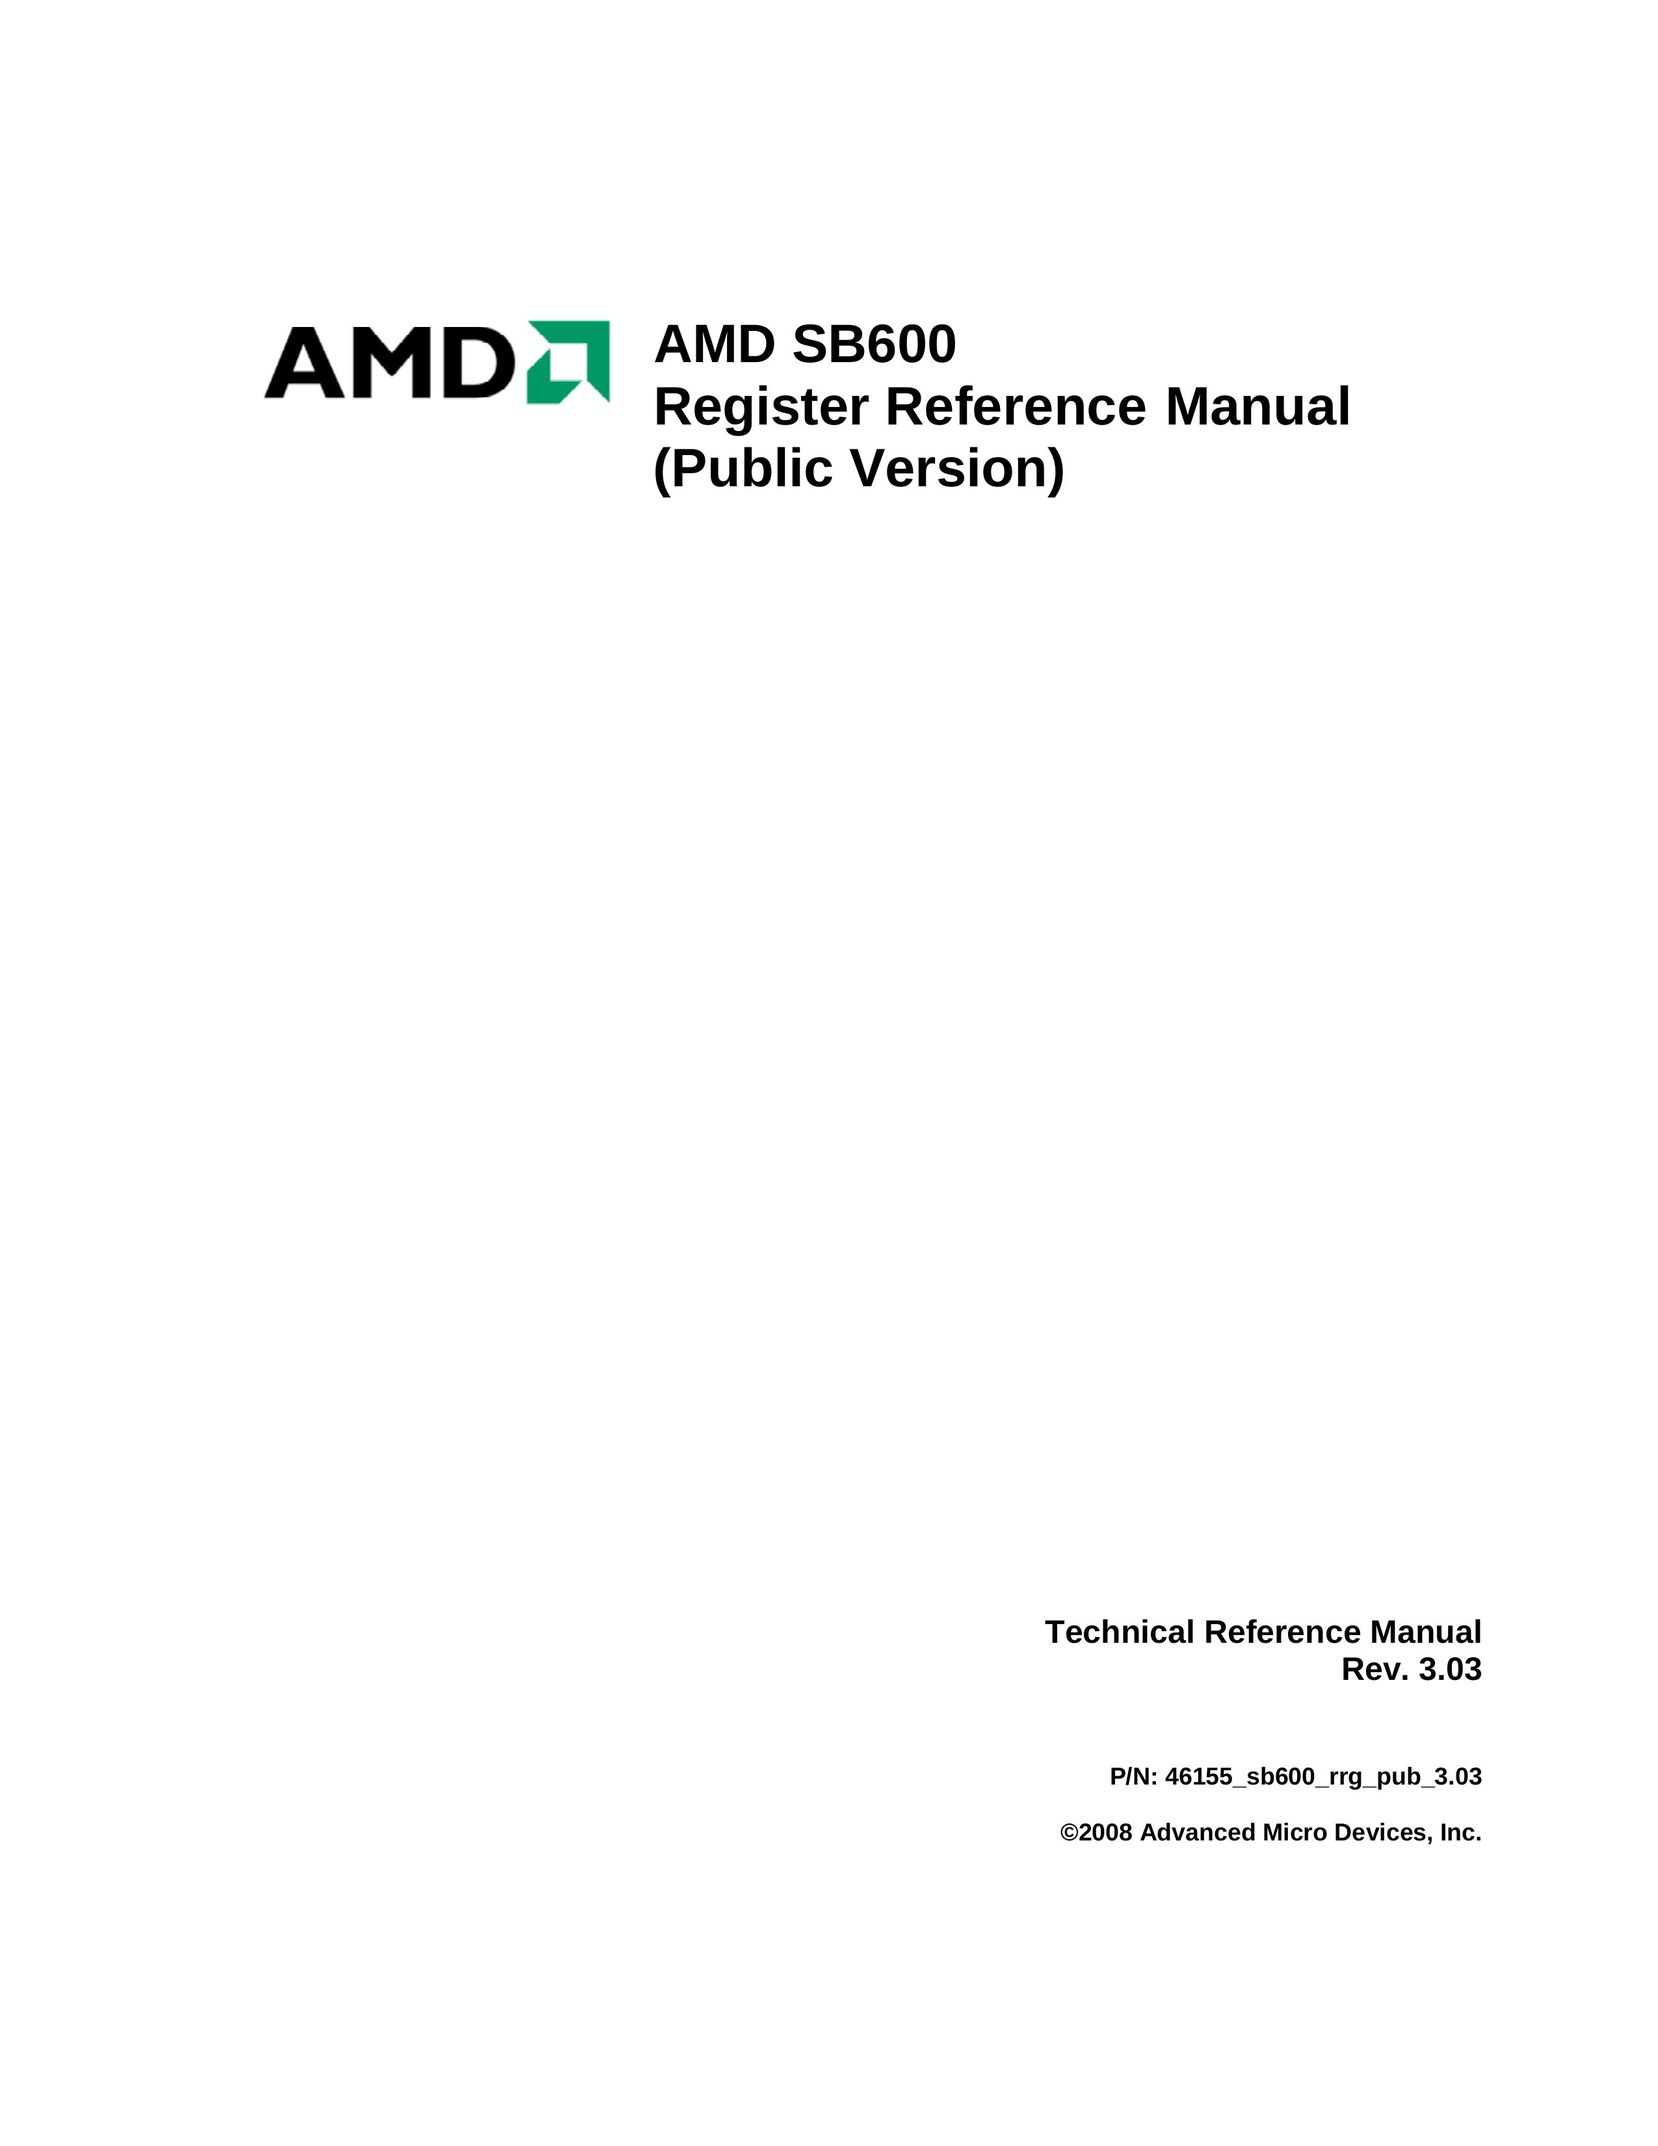 AMD SB600 Cash Register User Manual